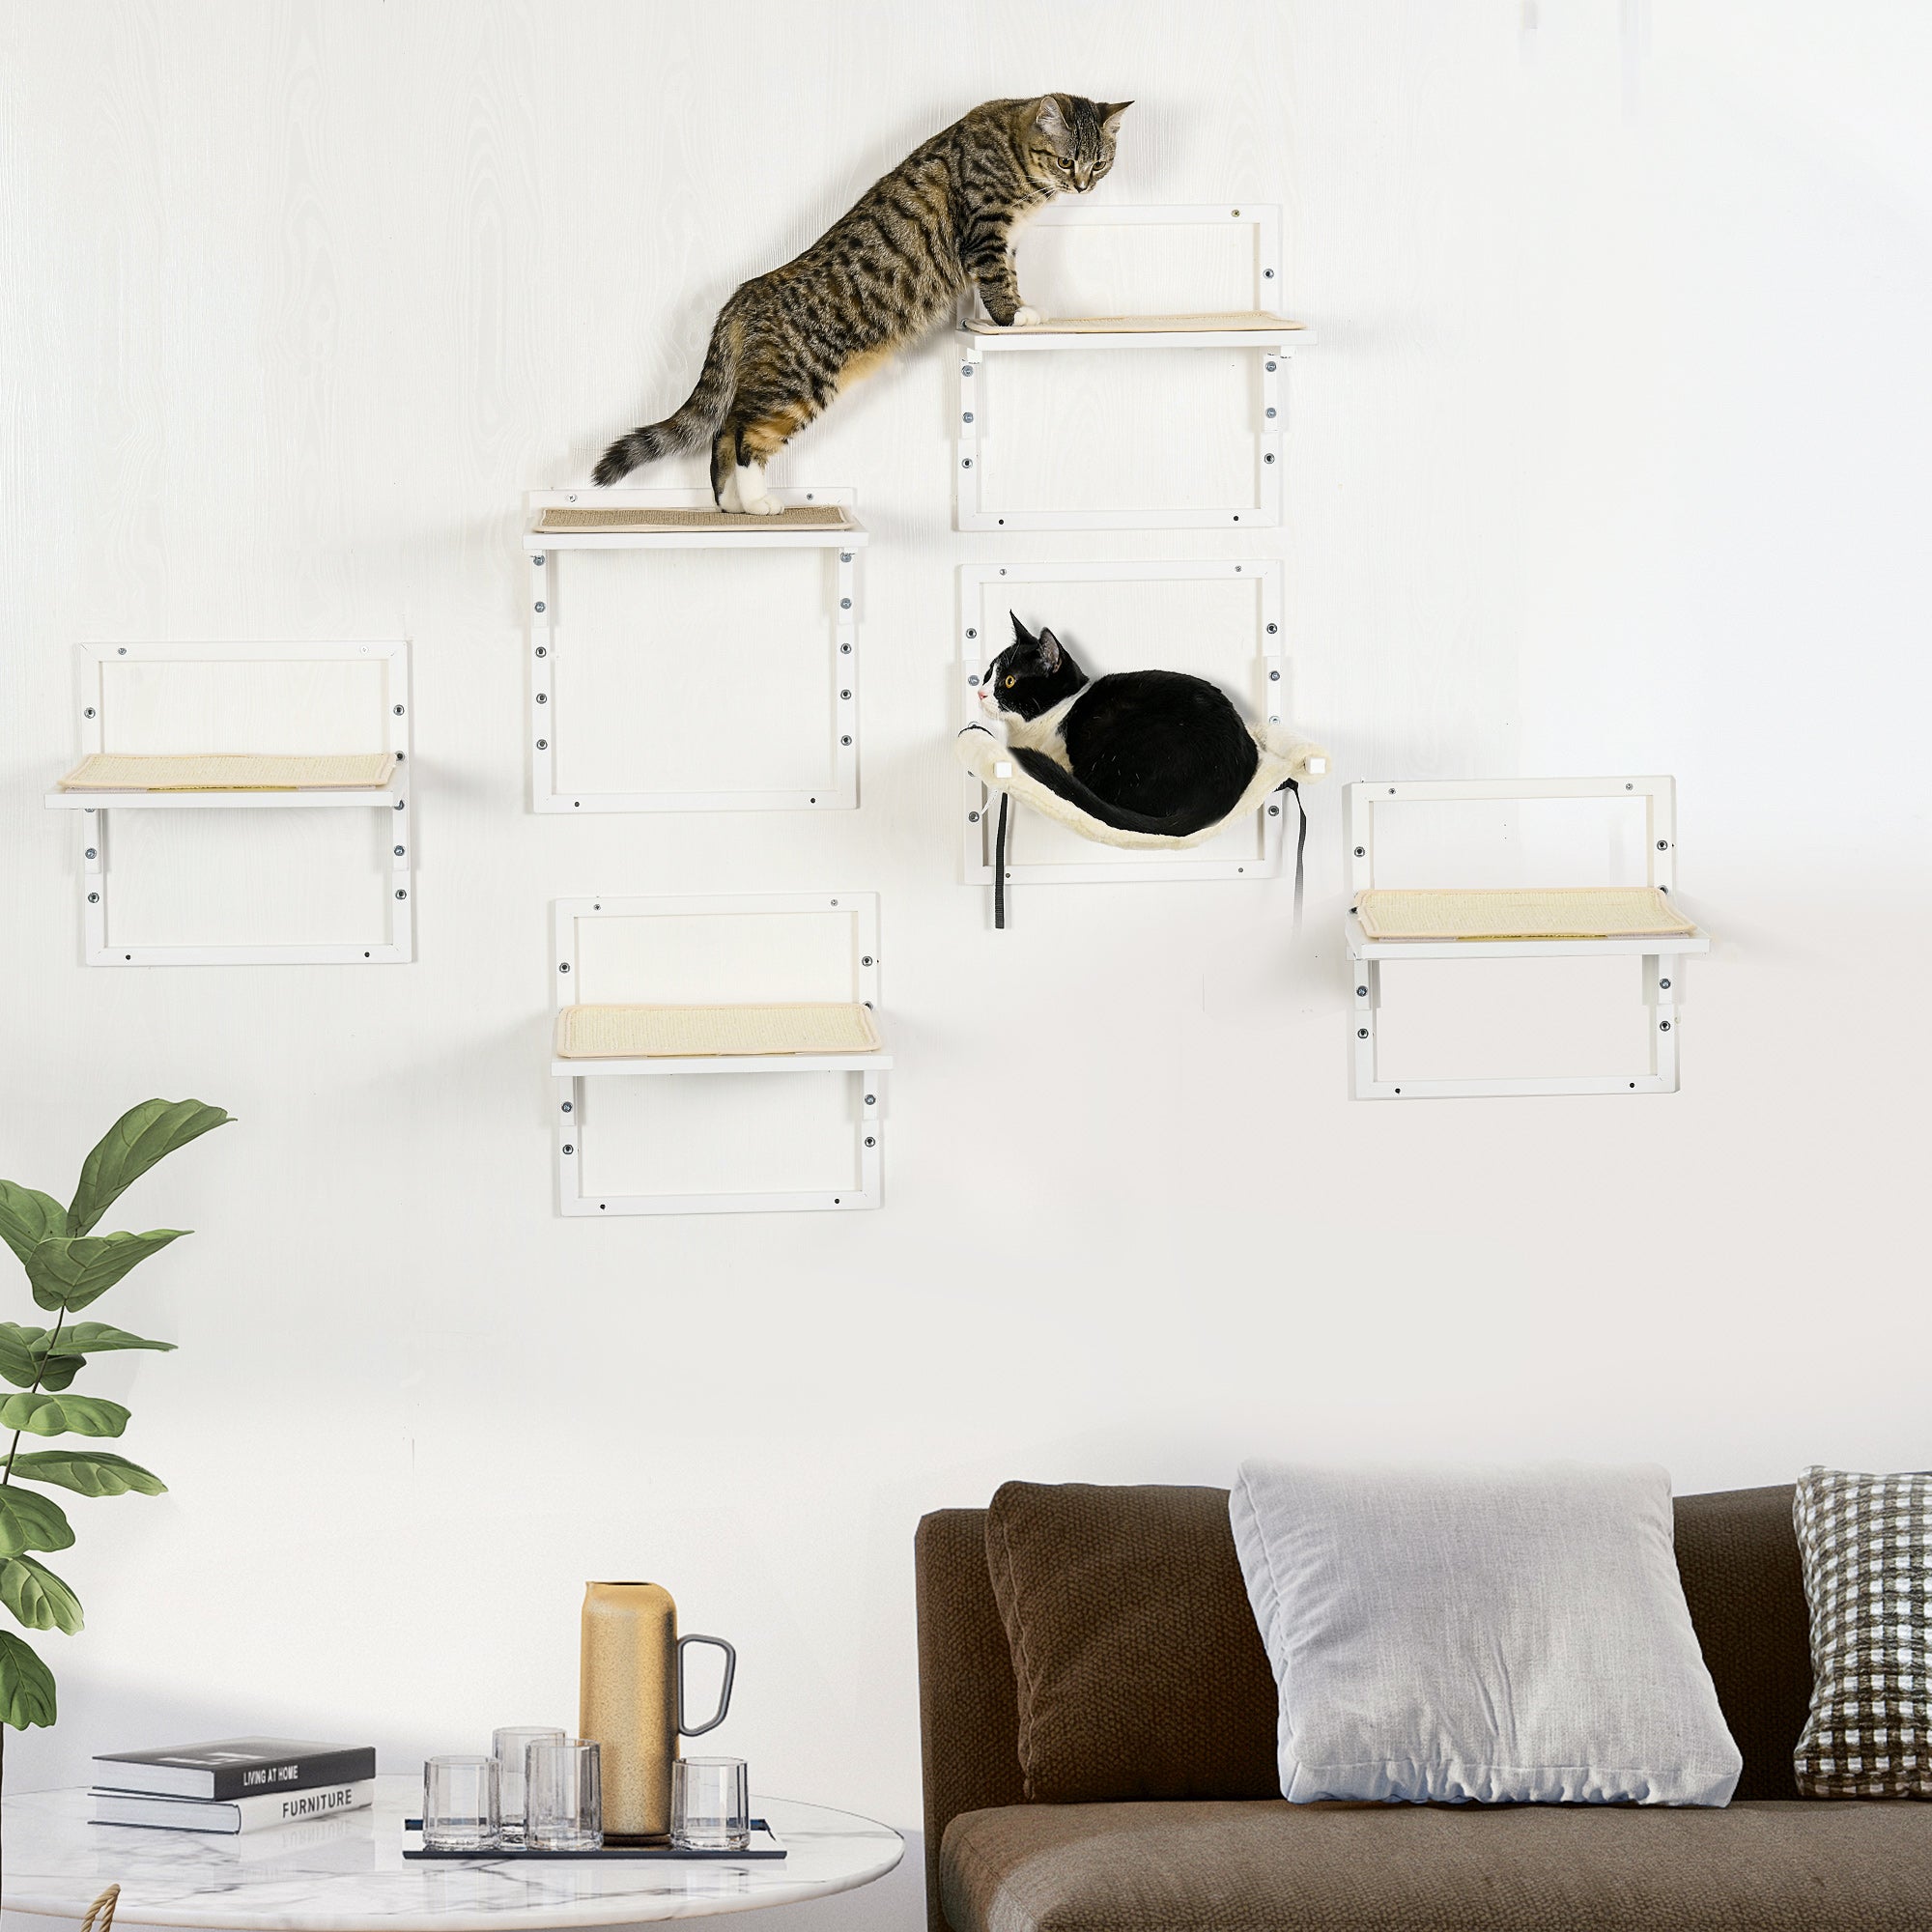 PawHut 6PCs Modern Cat Wall Shelves, Steel Wall-mounted Climbing Shelf Set, Height Adjustable Kitten Activity Center with Jumping Platform, Cream